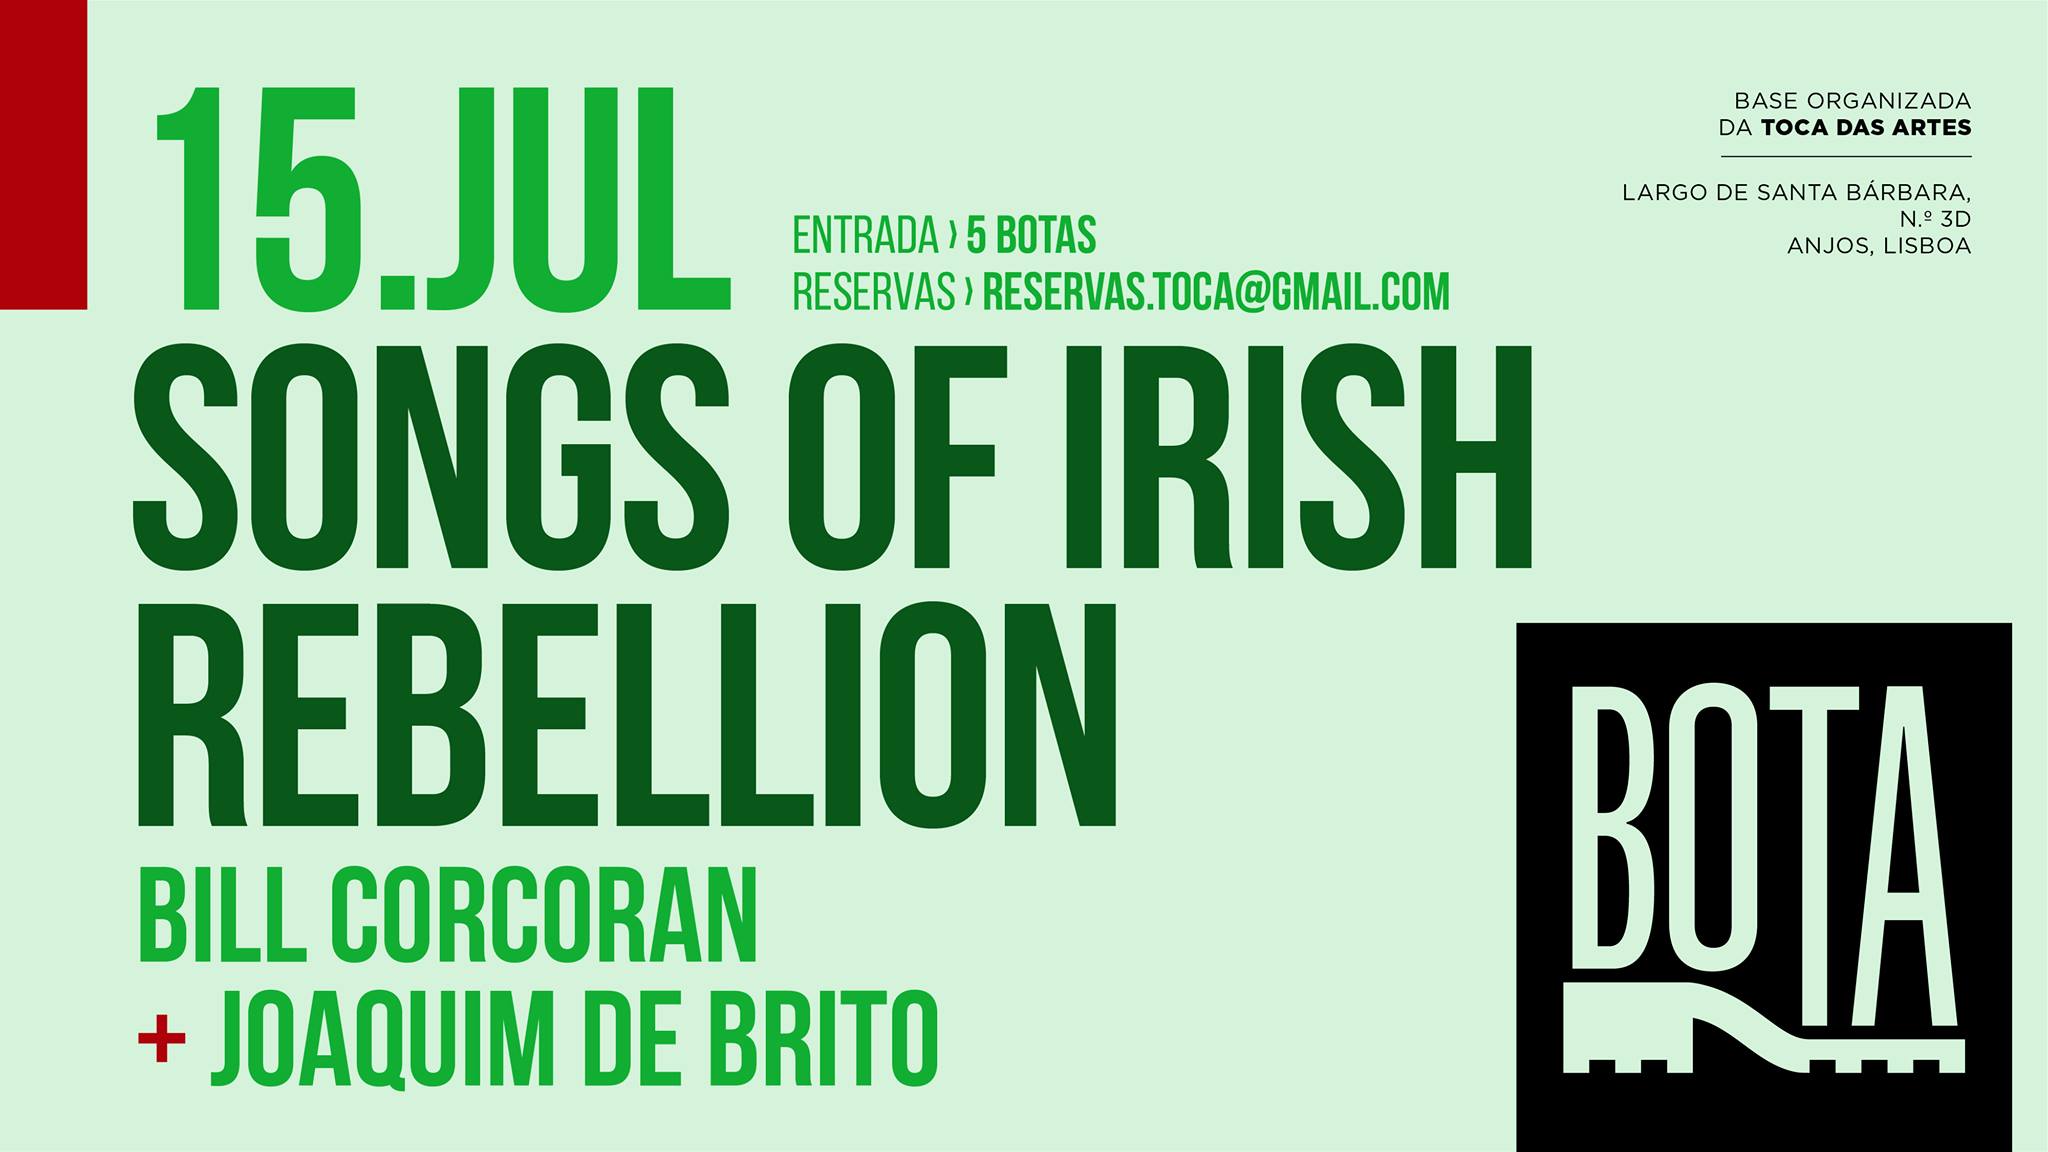 Songs of Irish Rebelion